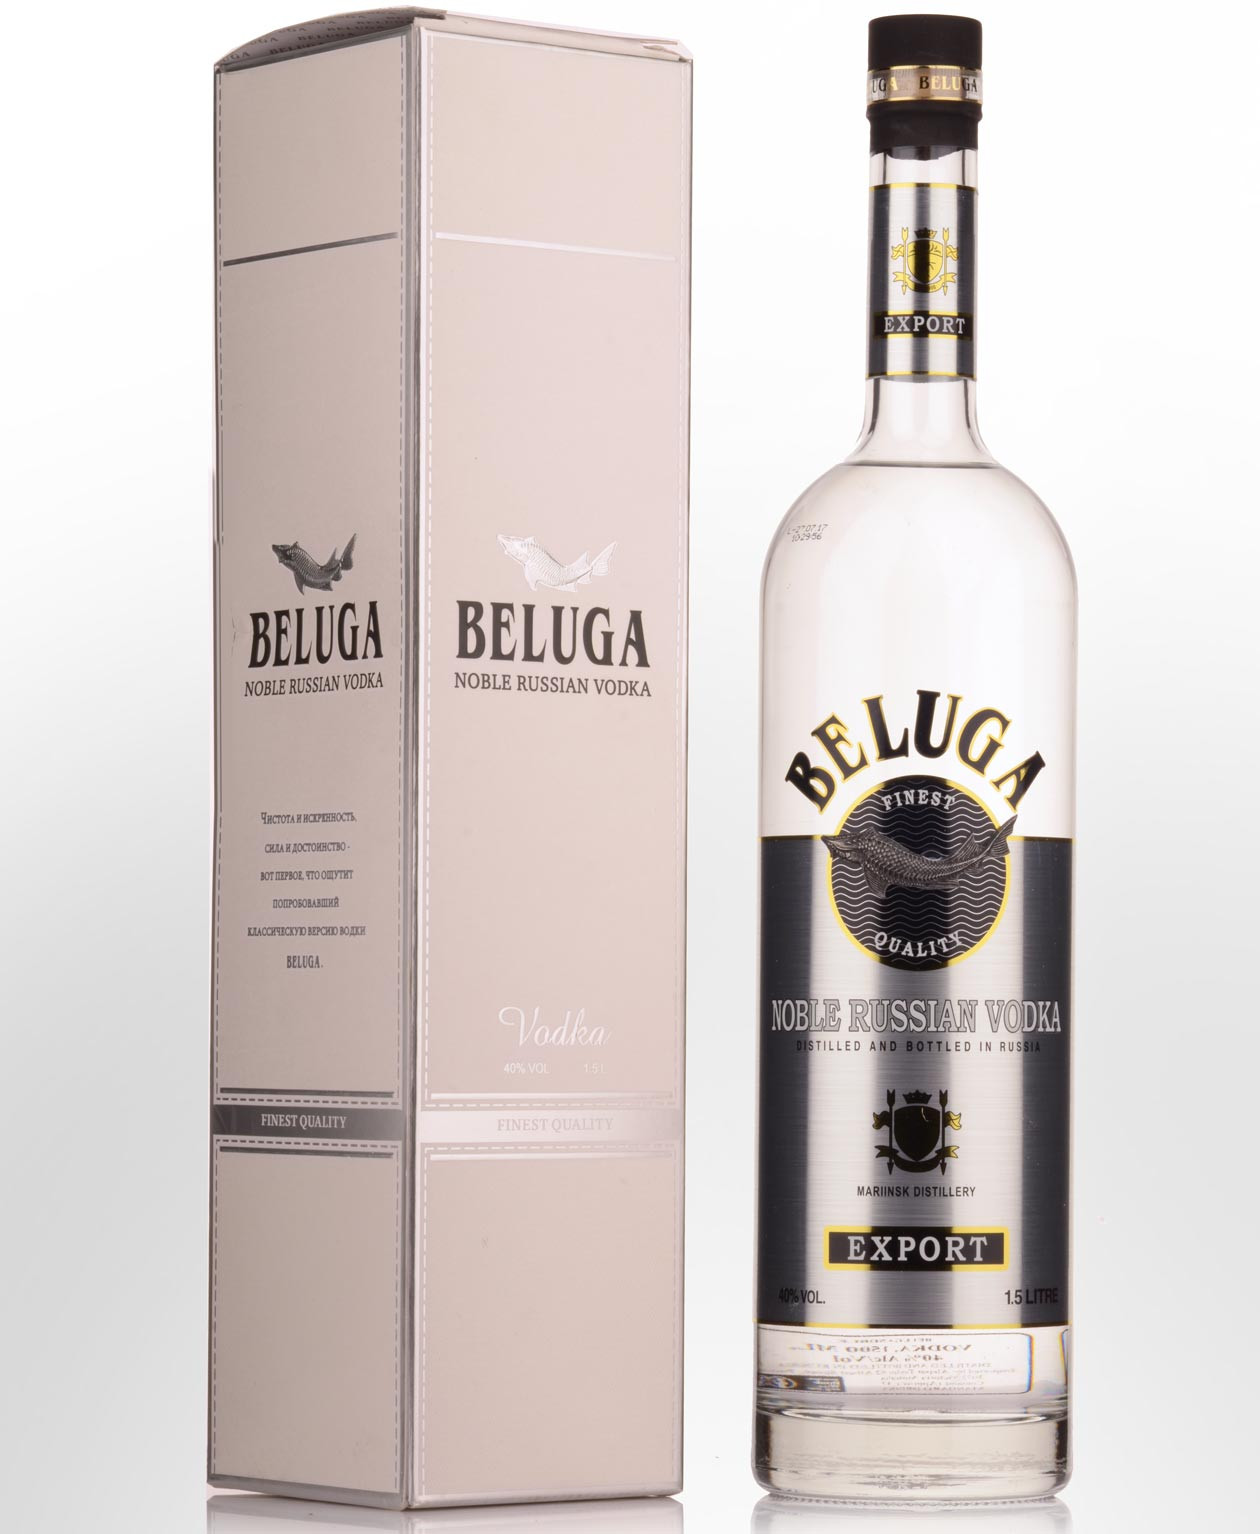 Beluga Celebration Vodka 1L (40% Vol.) - Beluga - Vodka